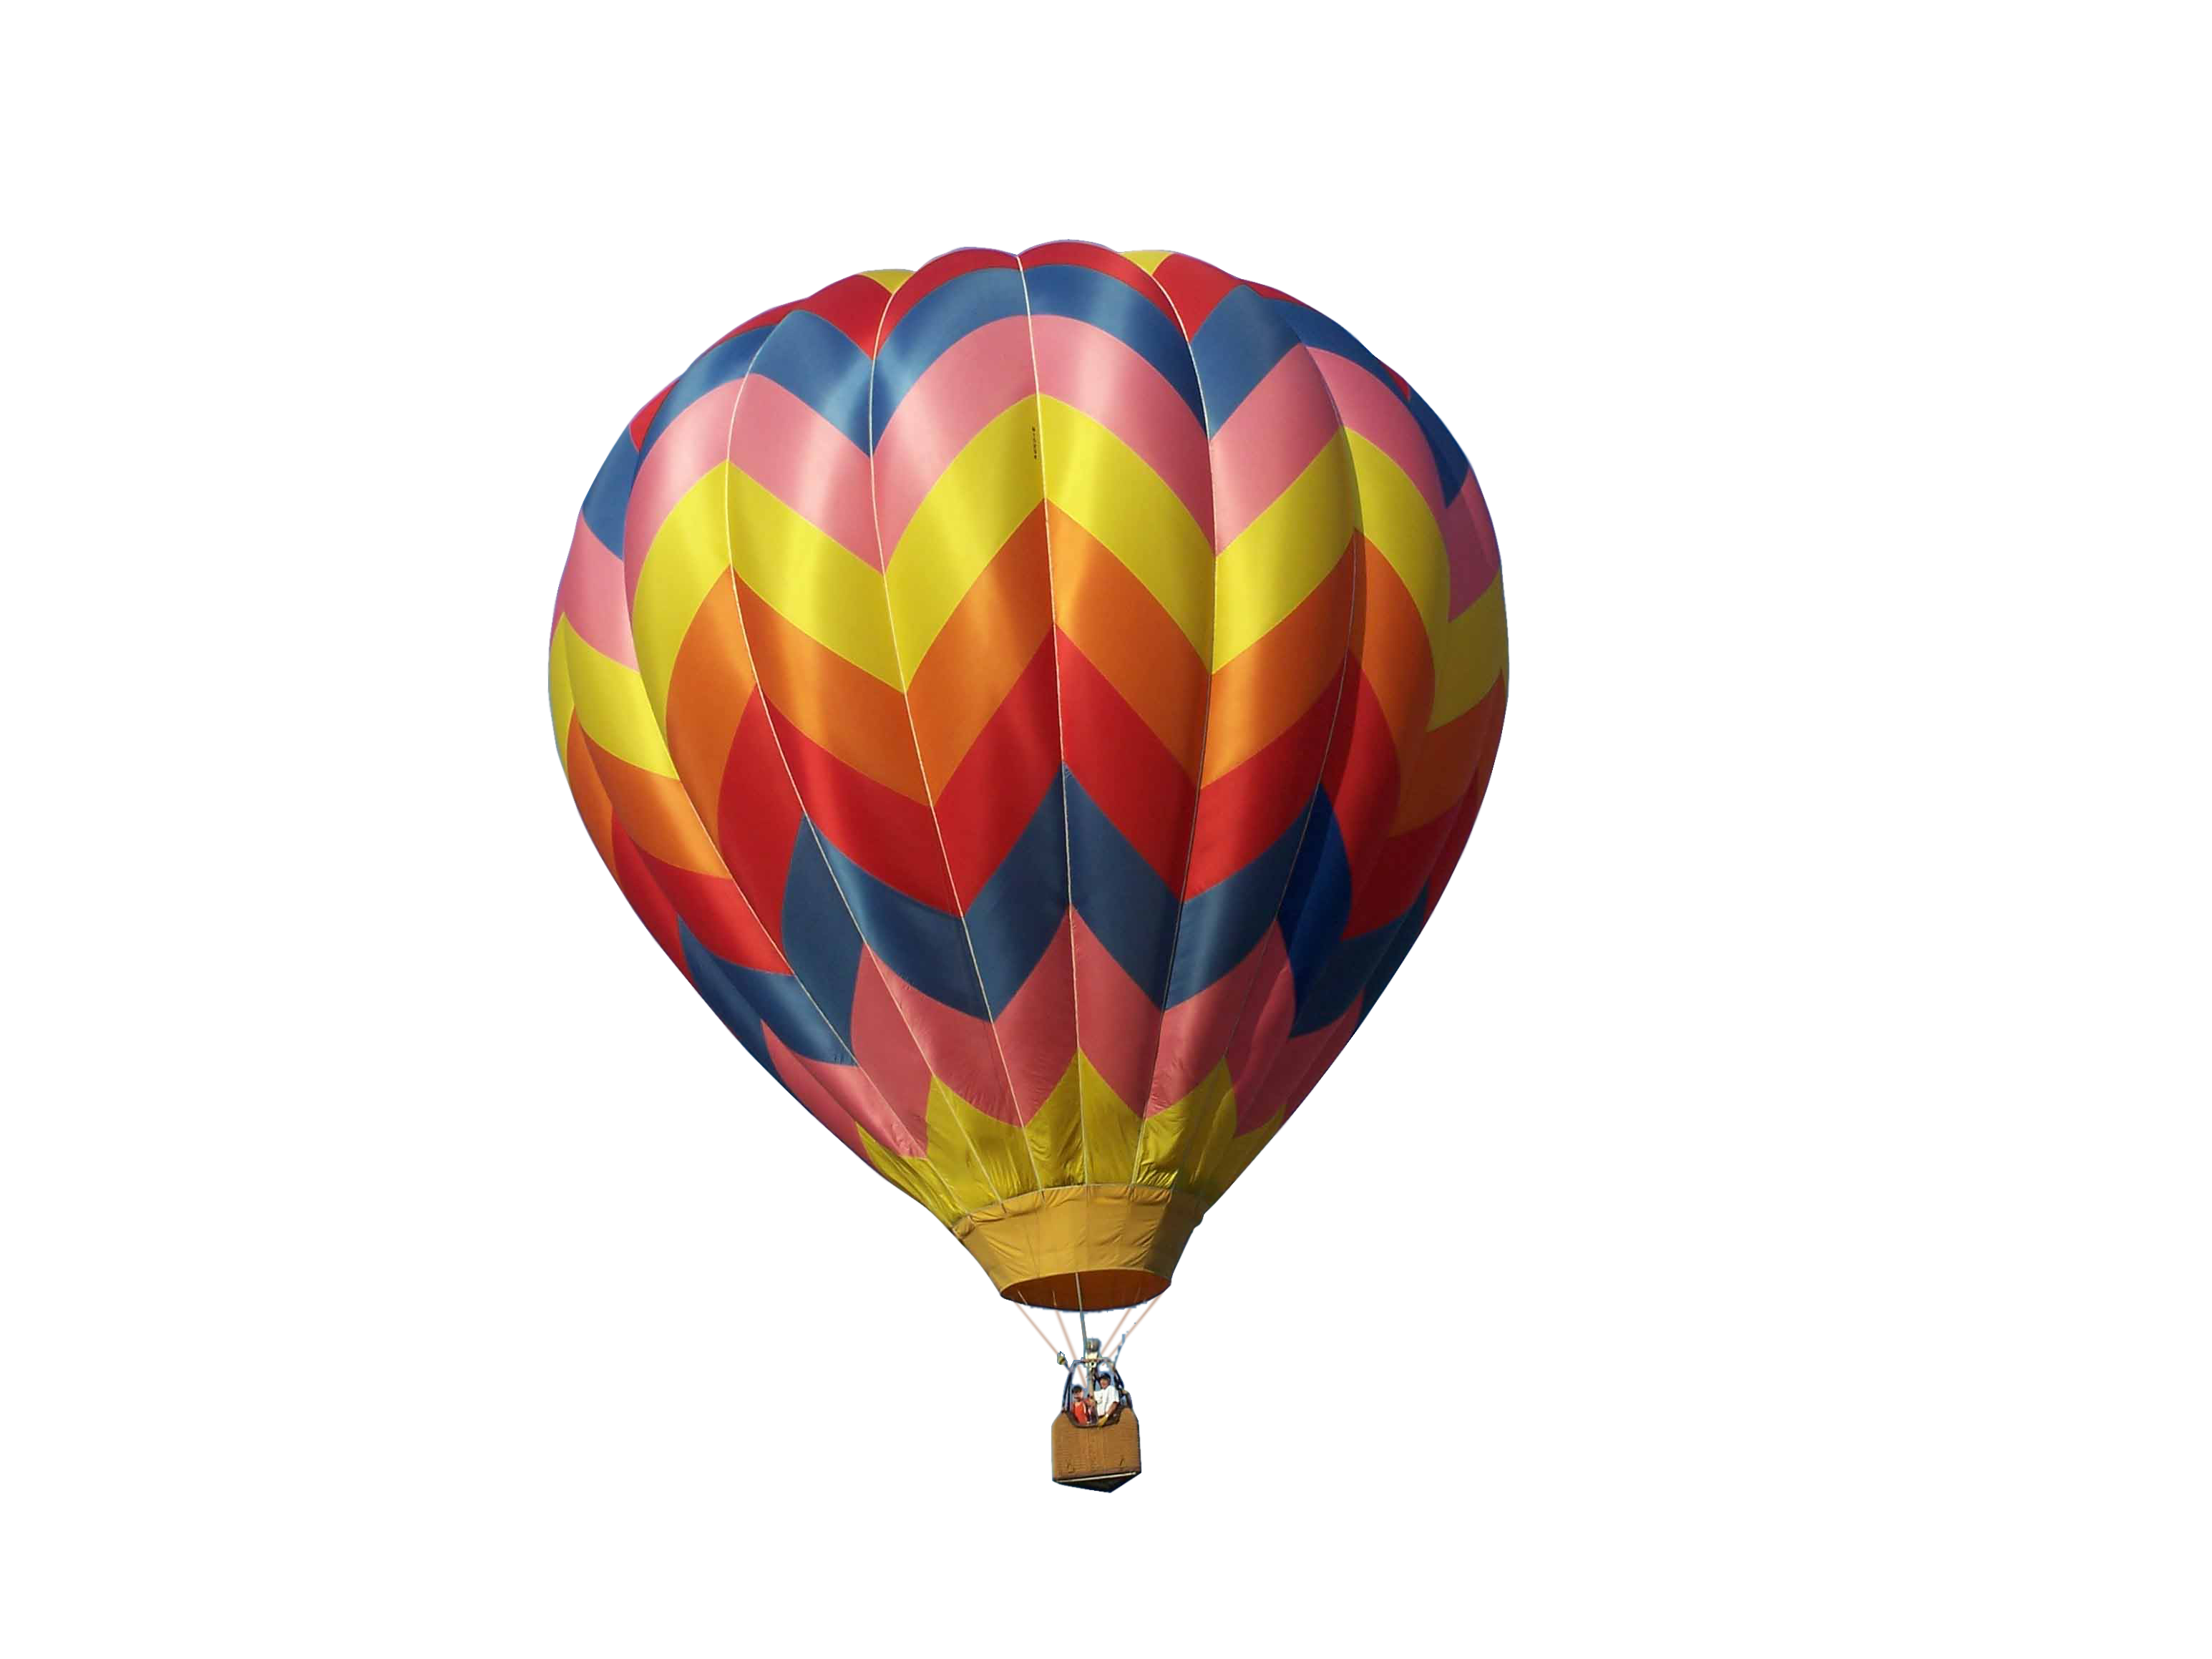 Hot Air Balloon PNG HD and HQ Image - Hot Air Balloon Png